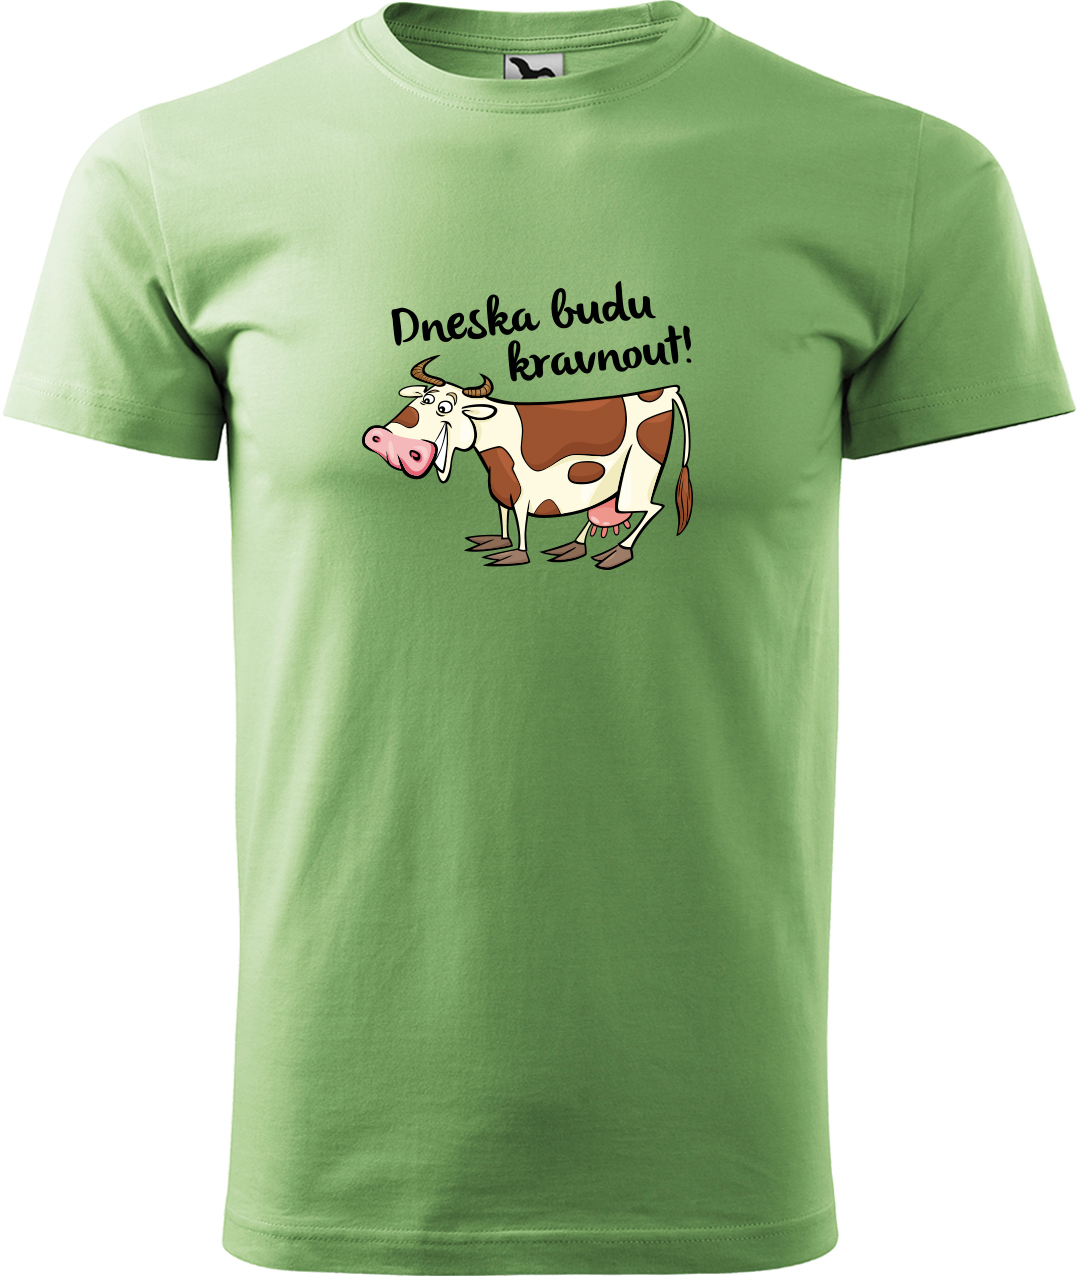 Pánské tričko s krávou - Dneska budu kravnout! Velikost: M, Barva: Trávově zelená (39), Střih: pánský